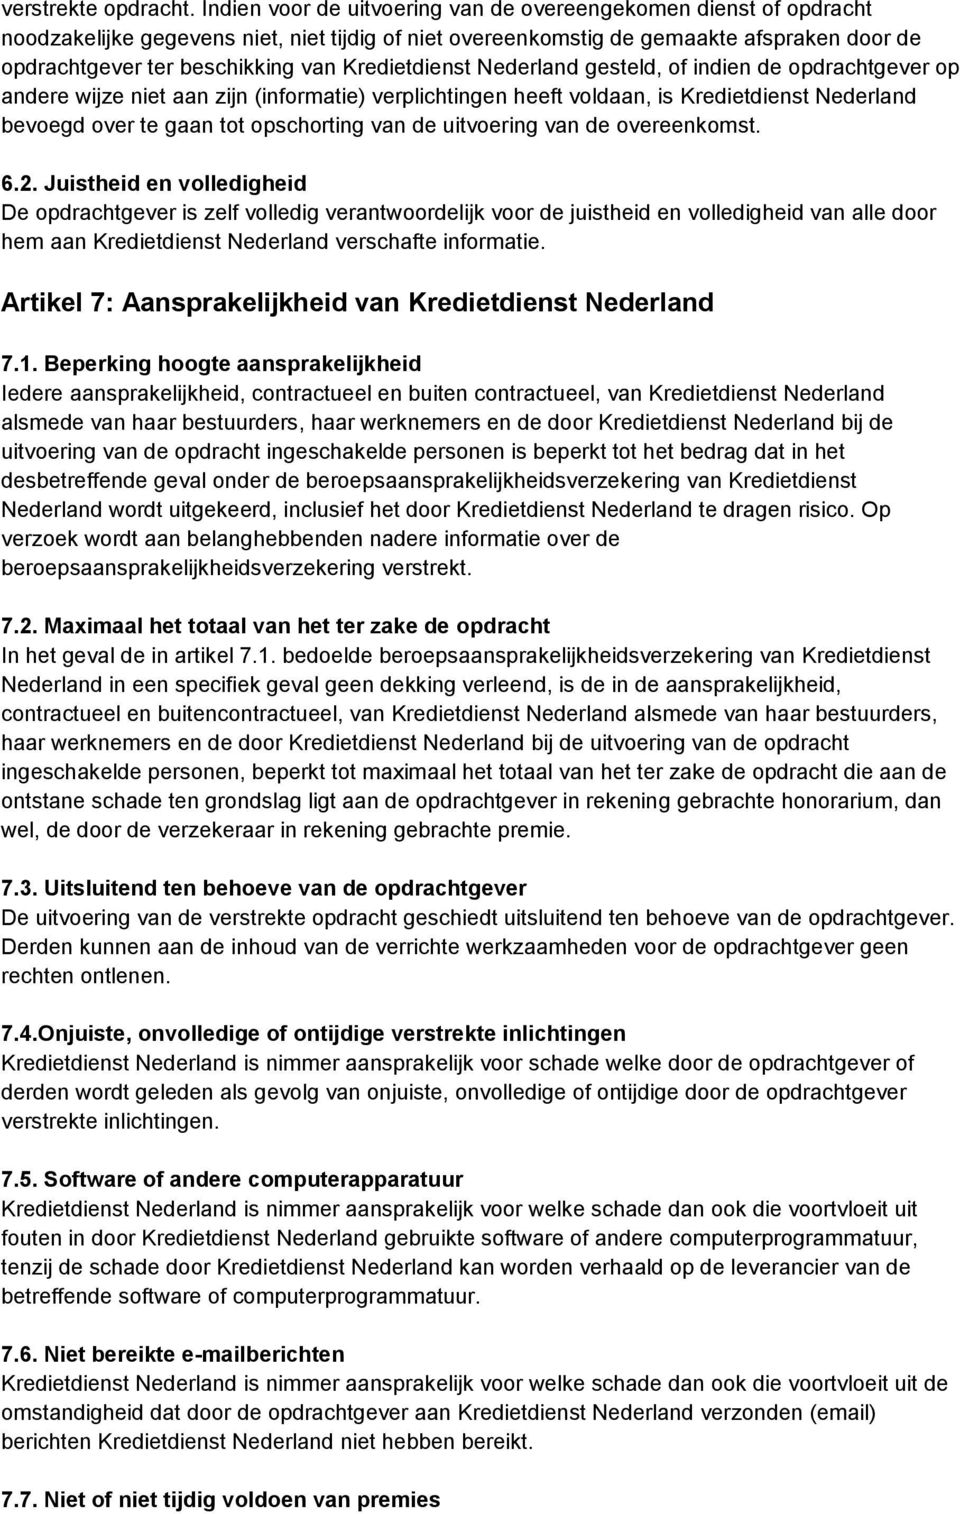 Kredietdienst Nederland gesteld, of indien de opdrachtgever op andere wijze niet aan zijn (informatie) verplichtingen heeft voldaan, is Kredietdienst Nederland bevoegd over te gaan tot opschorting